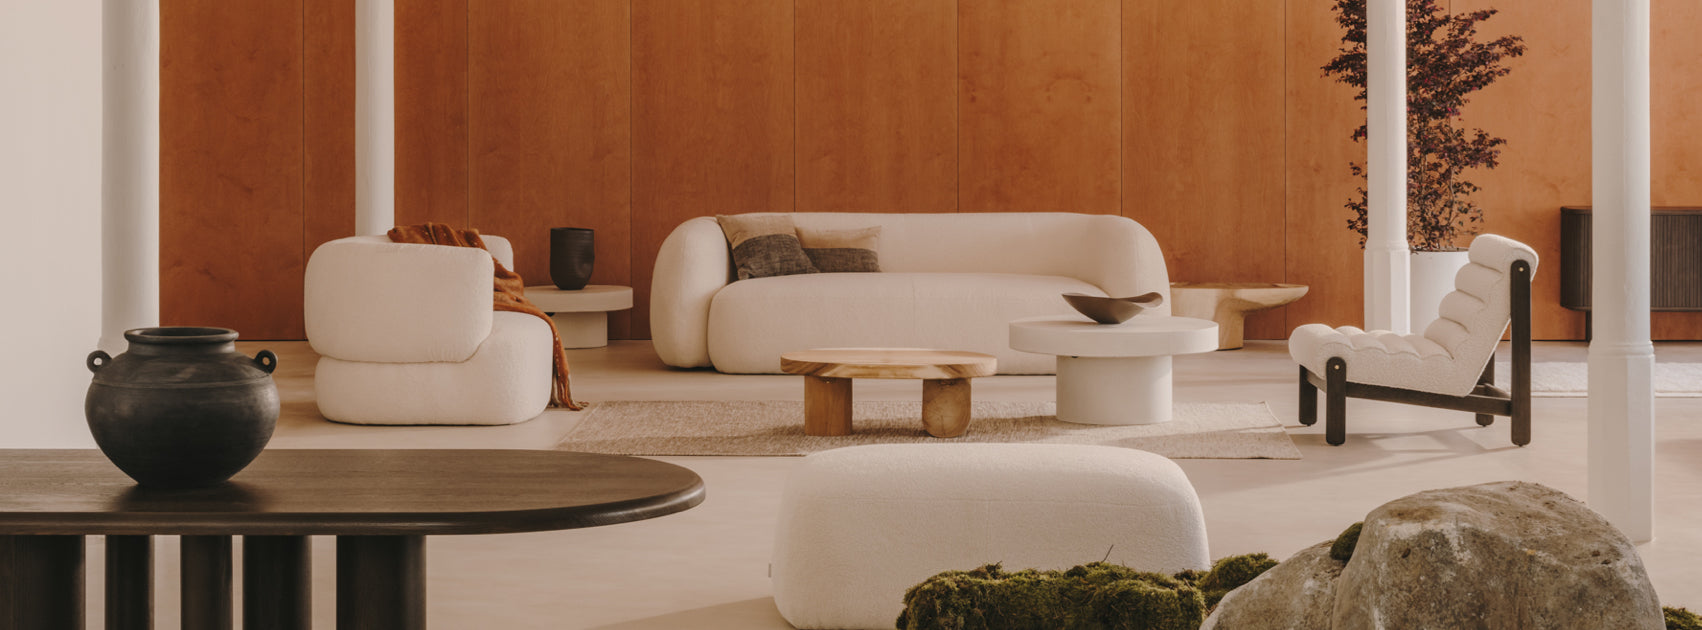 Grafika przedstawia salon urządzony w stylu modern classic z domieszką japandi. Ściana została wykończona materiałem przypominającym drewno, natomiast meble są utrzymane w beżowej i minimalistycznej stylistyce.